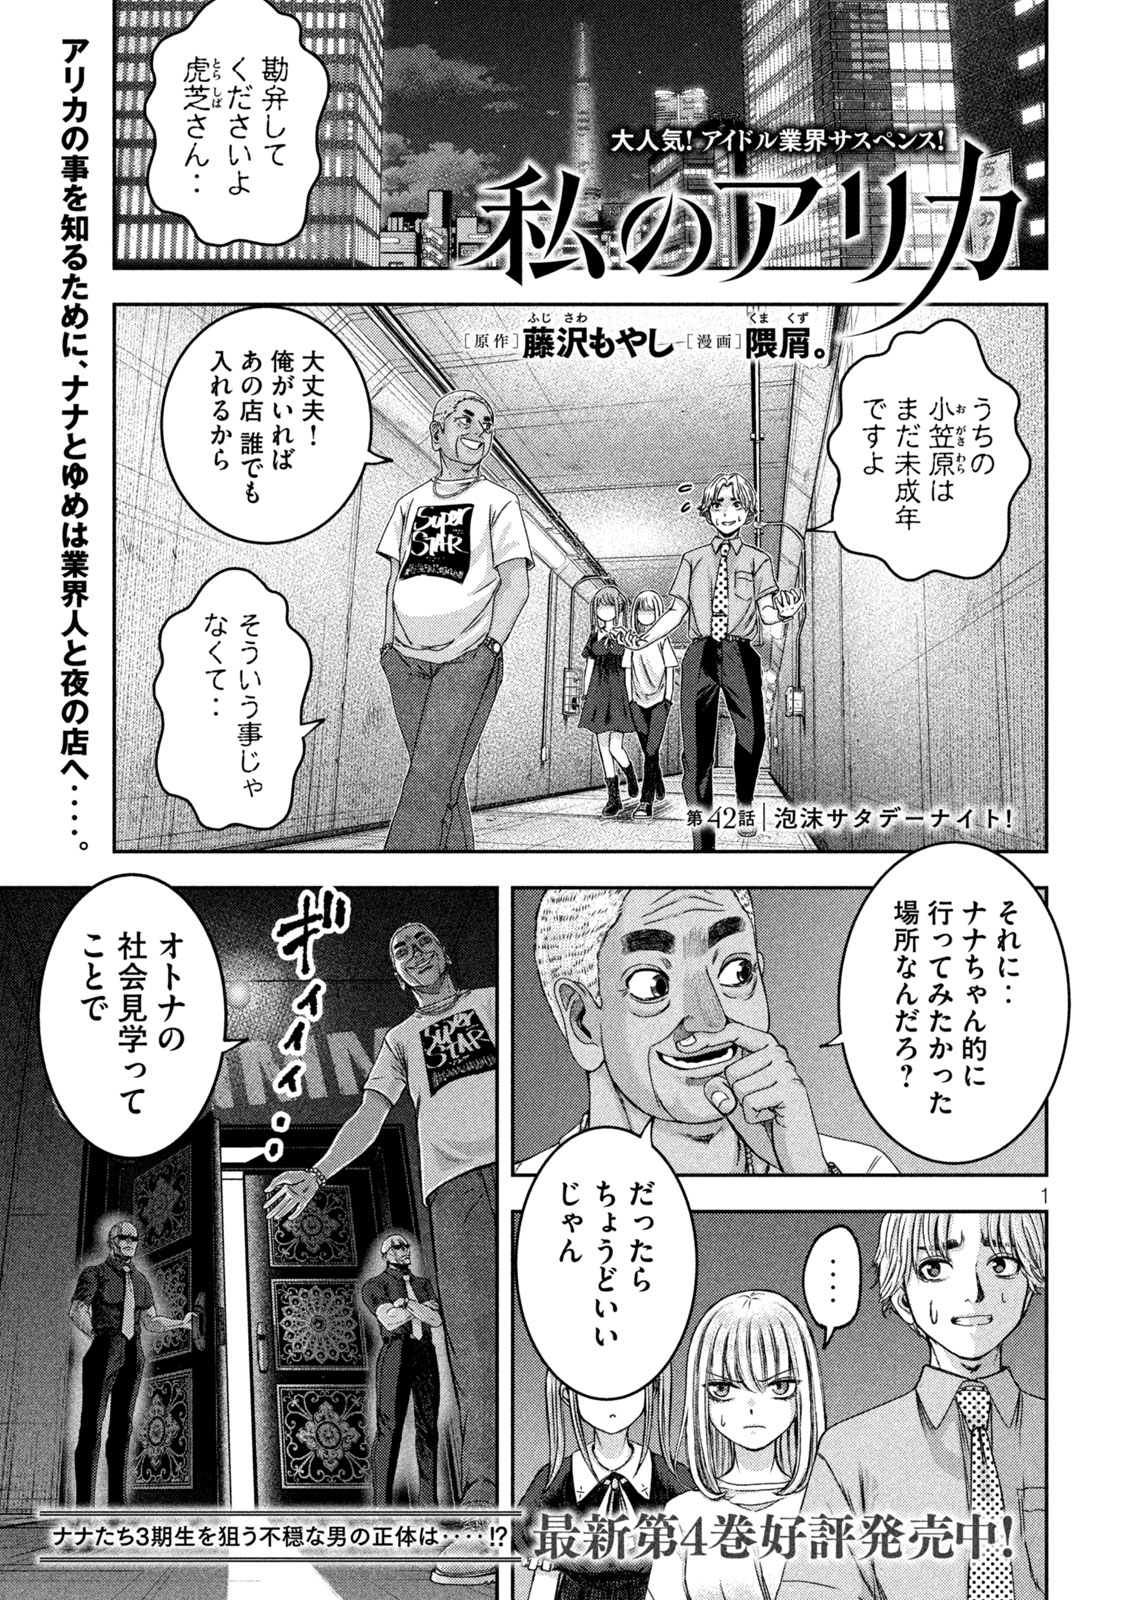 Watashi no Arika - Chapter 42 - Page 1